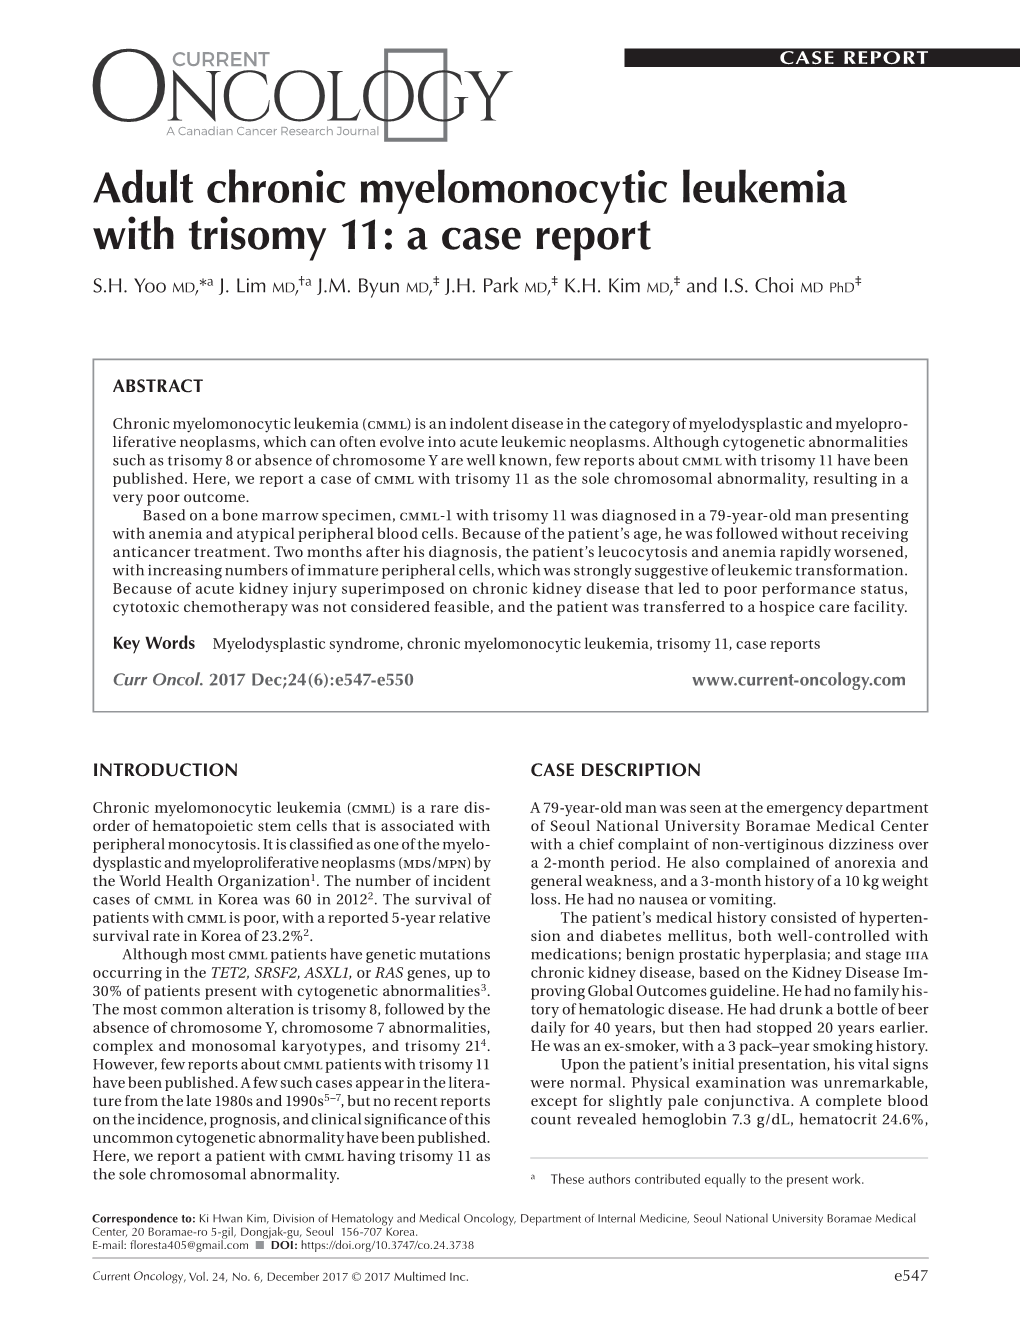 Adult Chronic Myelomonocytic Leukemia with Trisomy 11: a Case Report